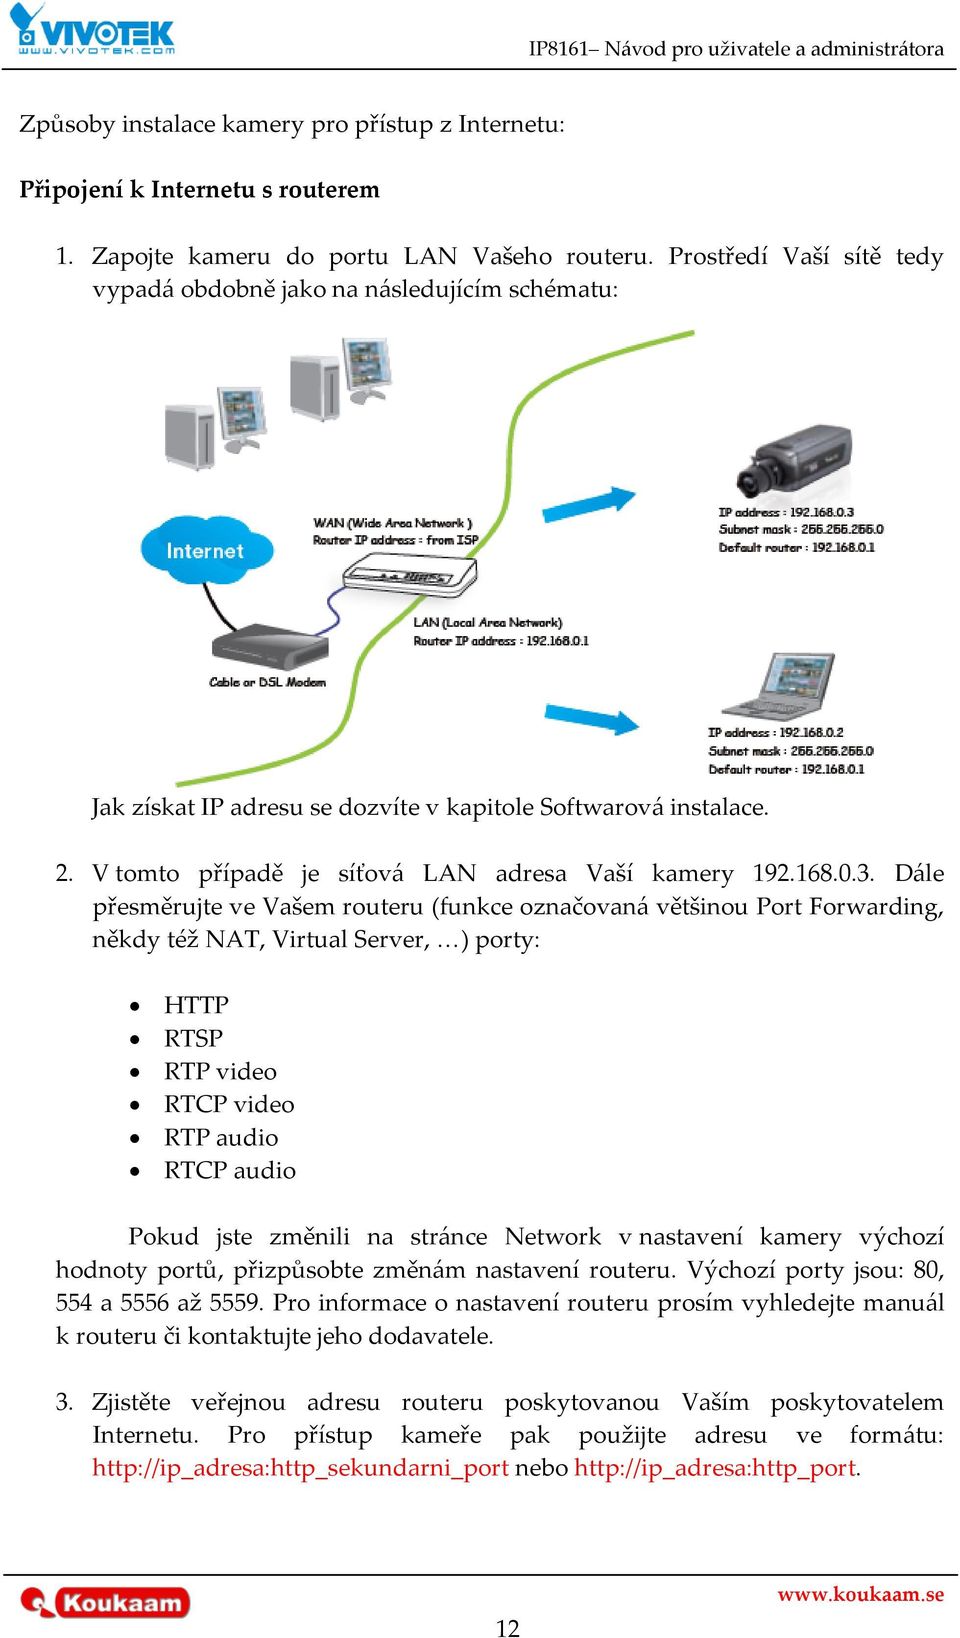 D{le přesměrujte ve Vašem routeru (funkce označovan{ většinou Port Forwarding, někdy též NAT, Virtual Server, <) porty: HTTP RTSP RTP video RTCP video RTP audio RTCP audio Pokud jste změnili na